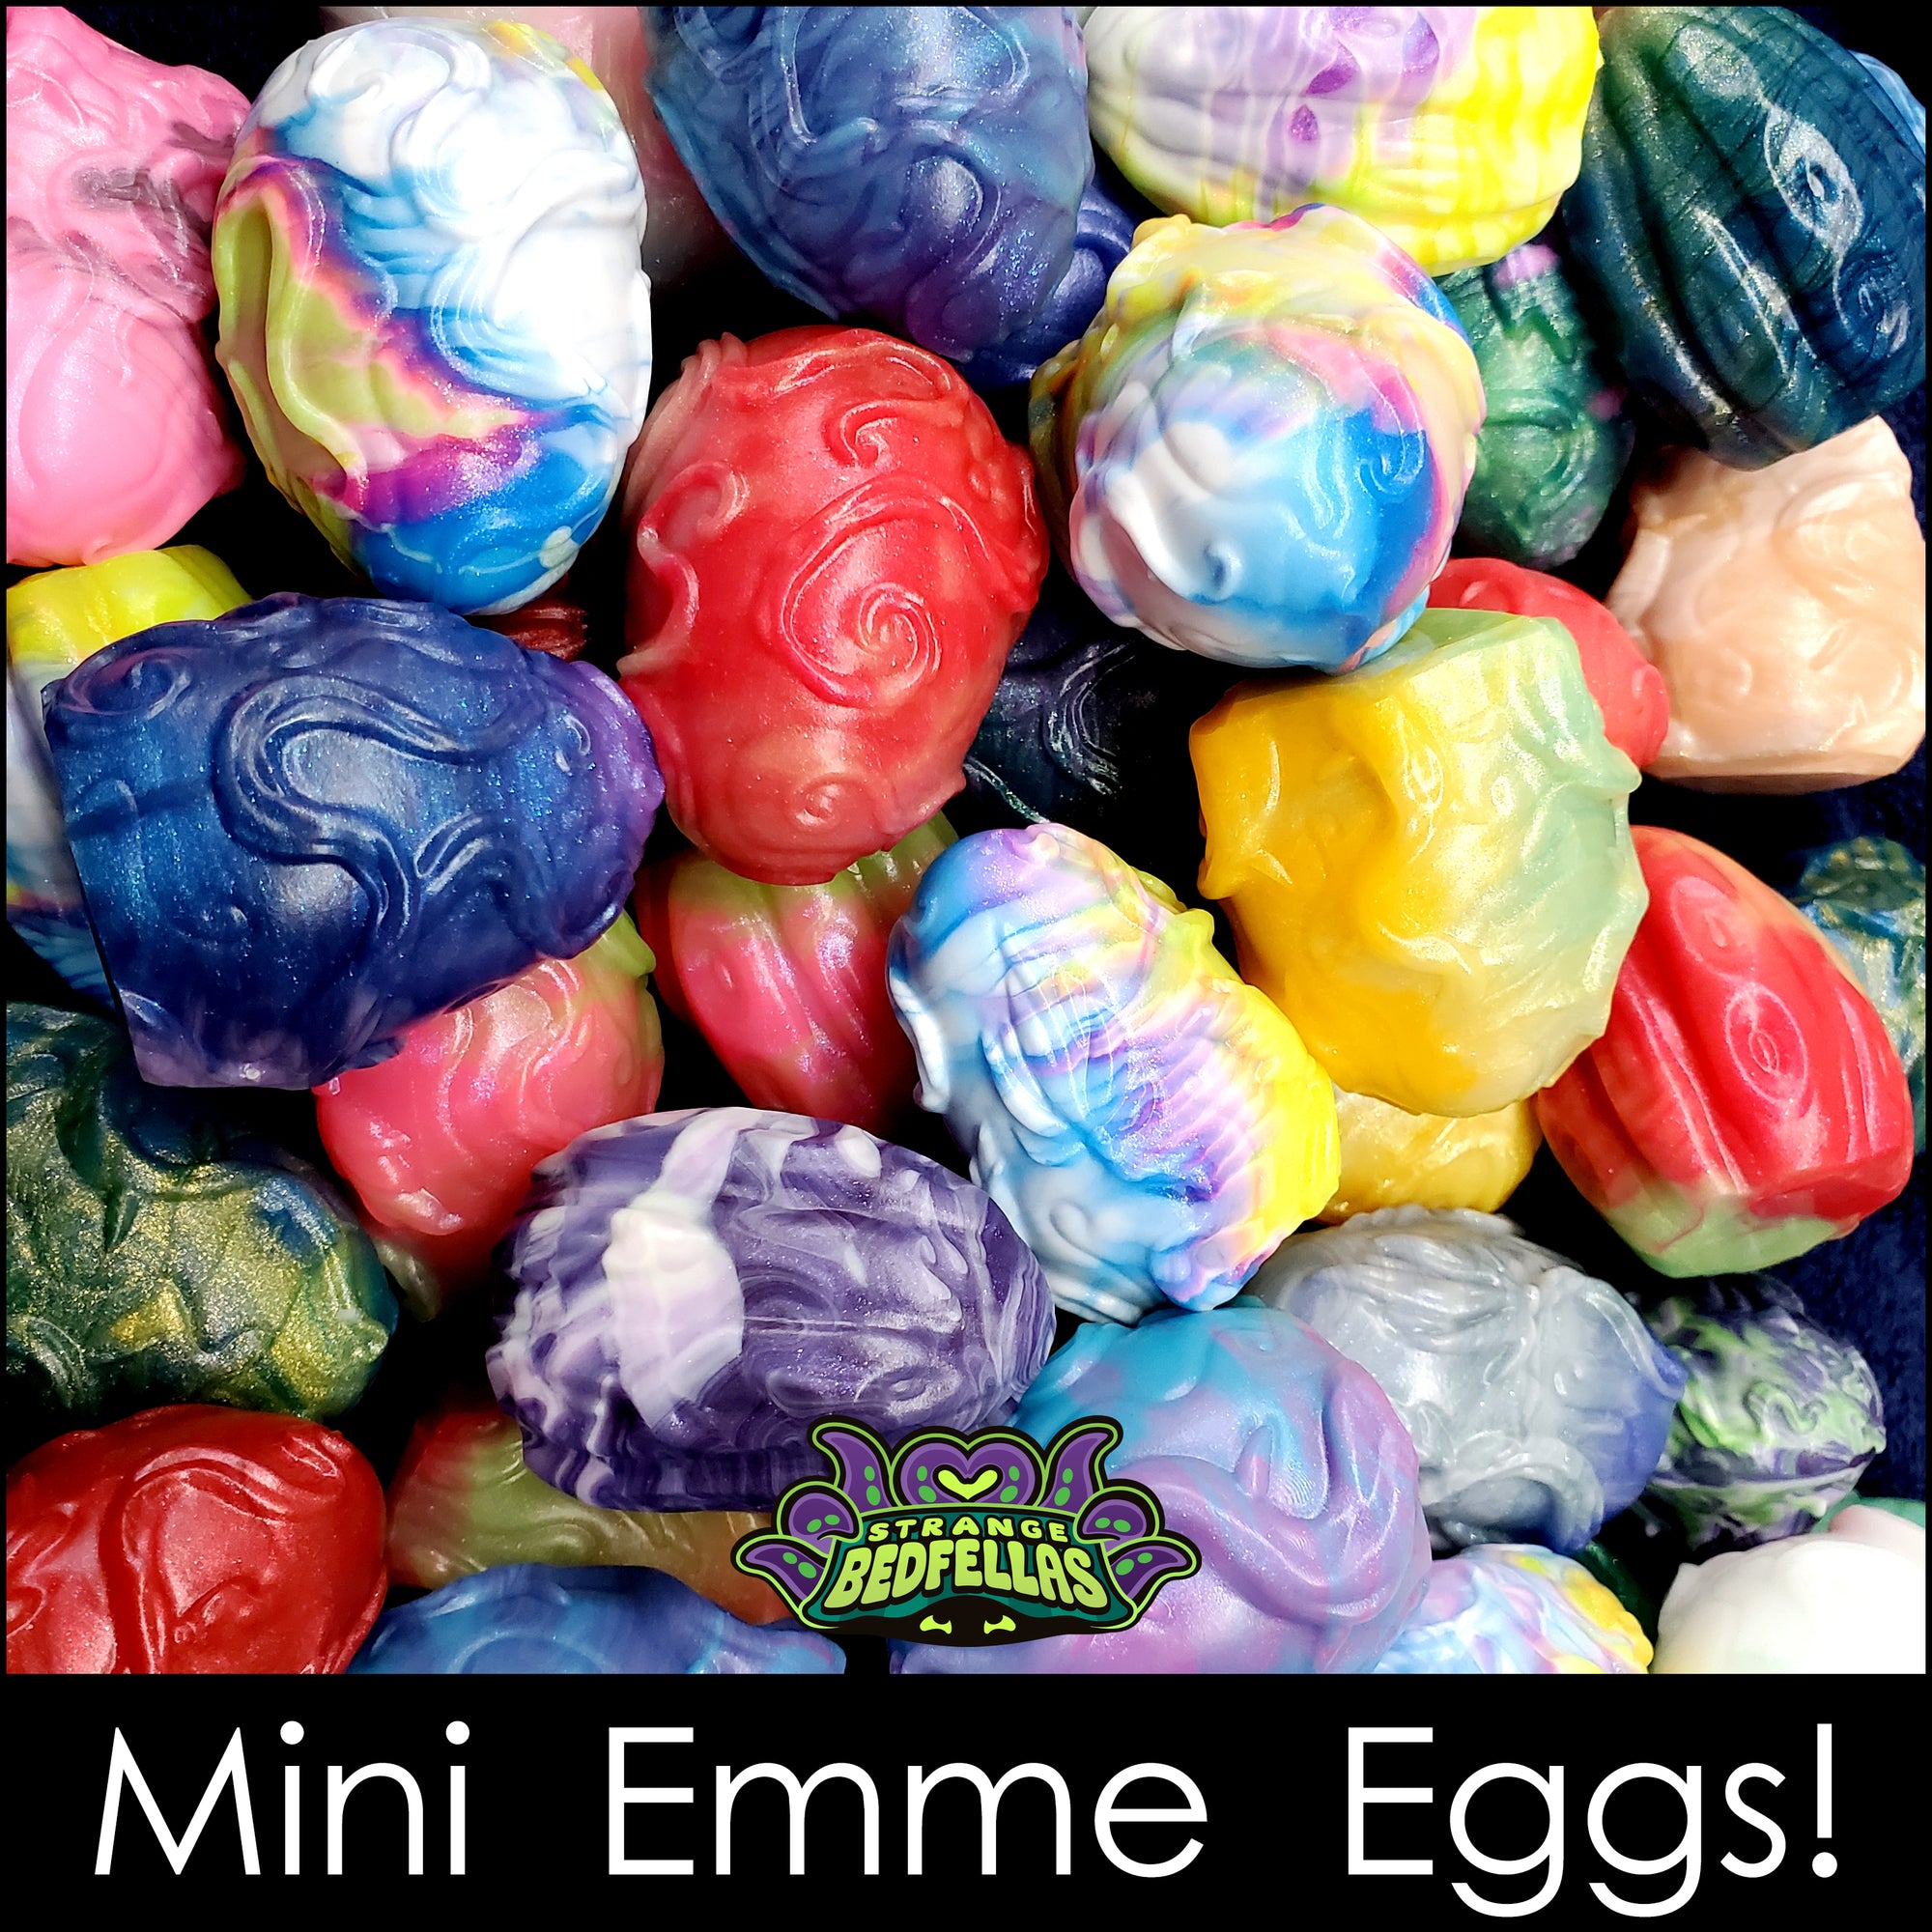 Mini Emme Egg 2-packs